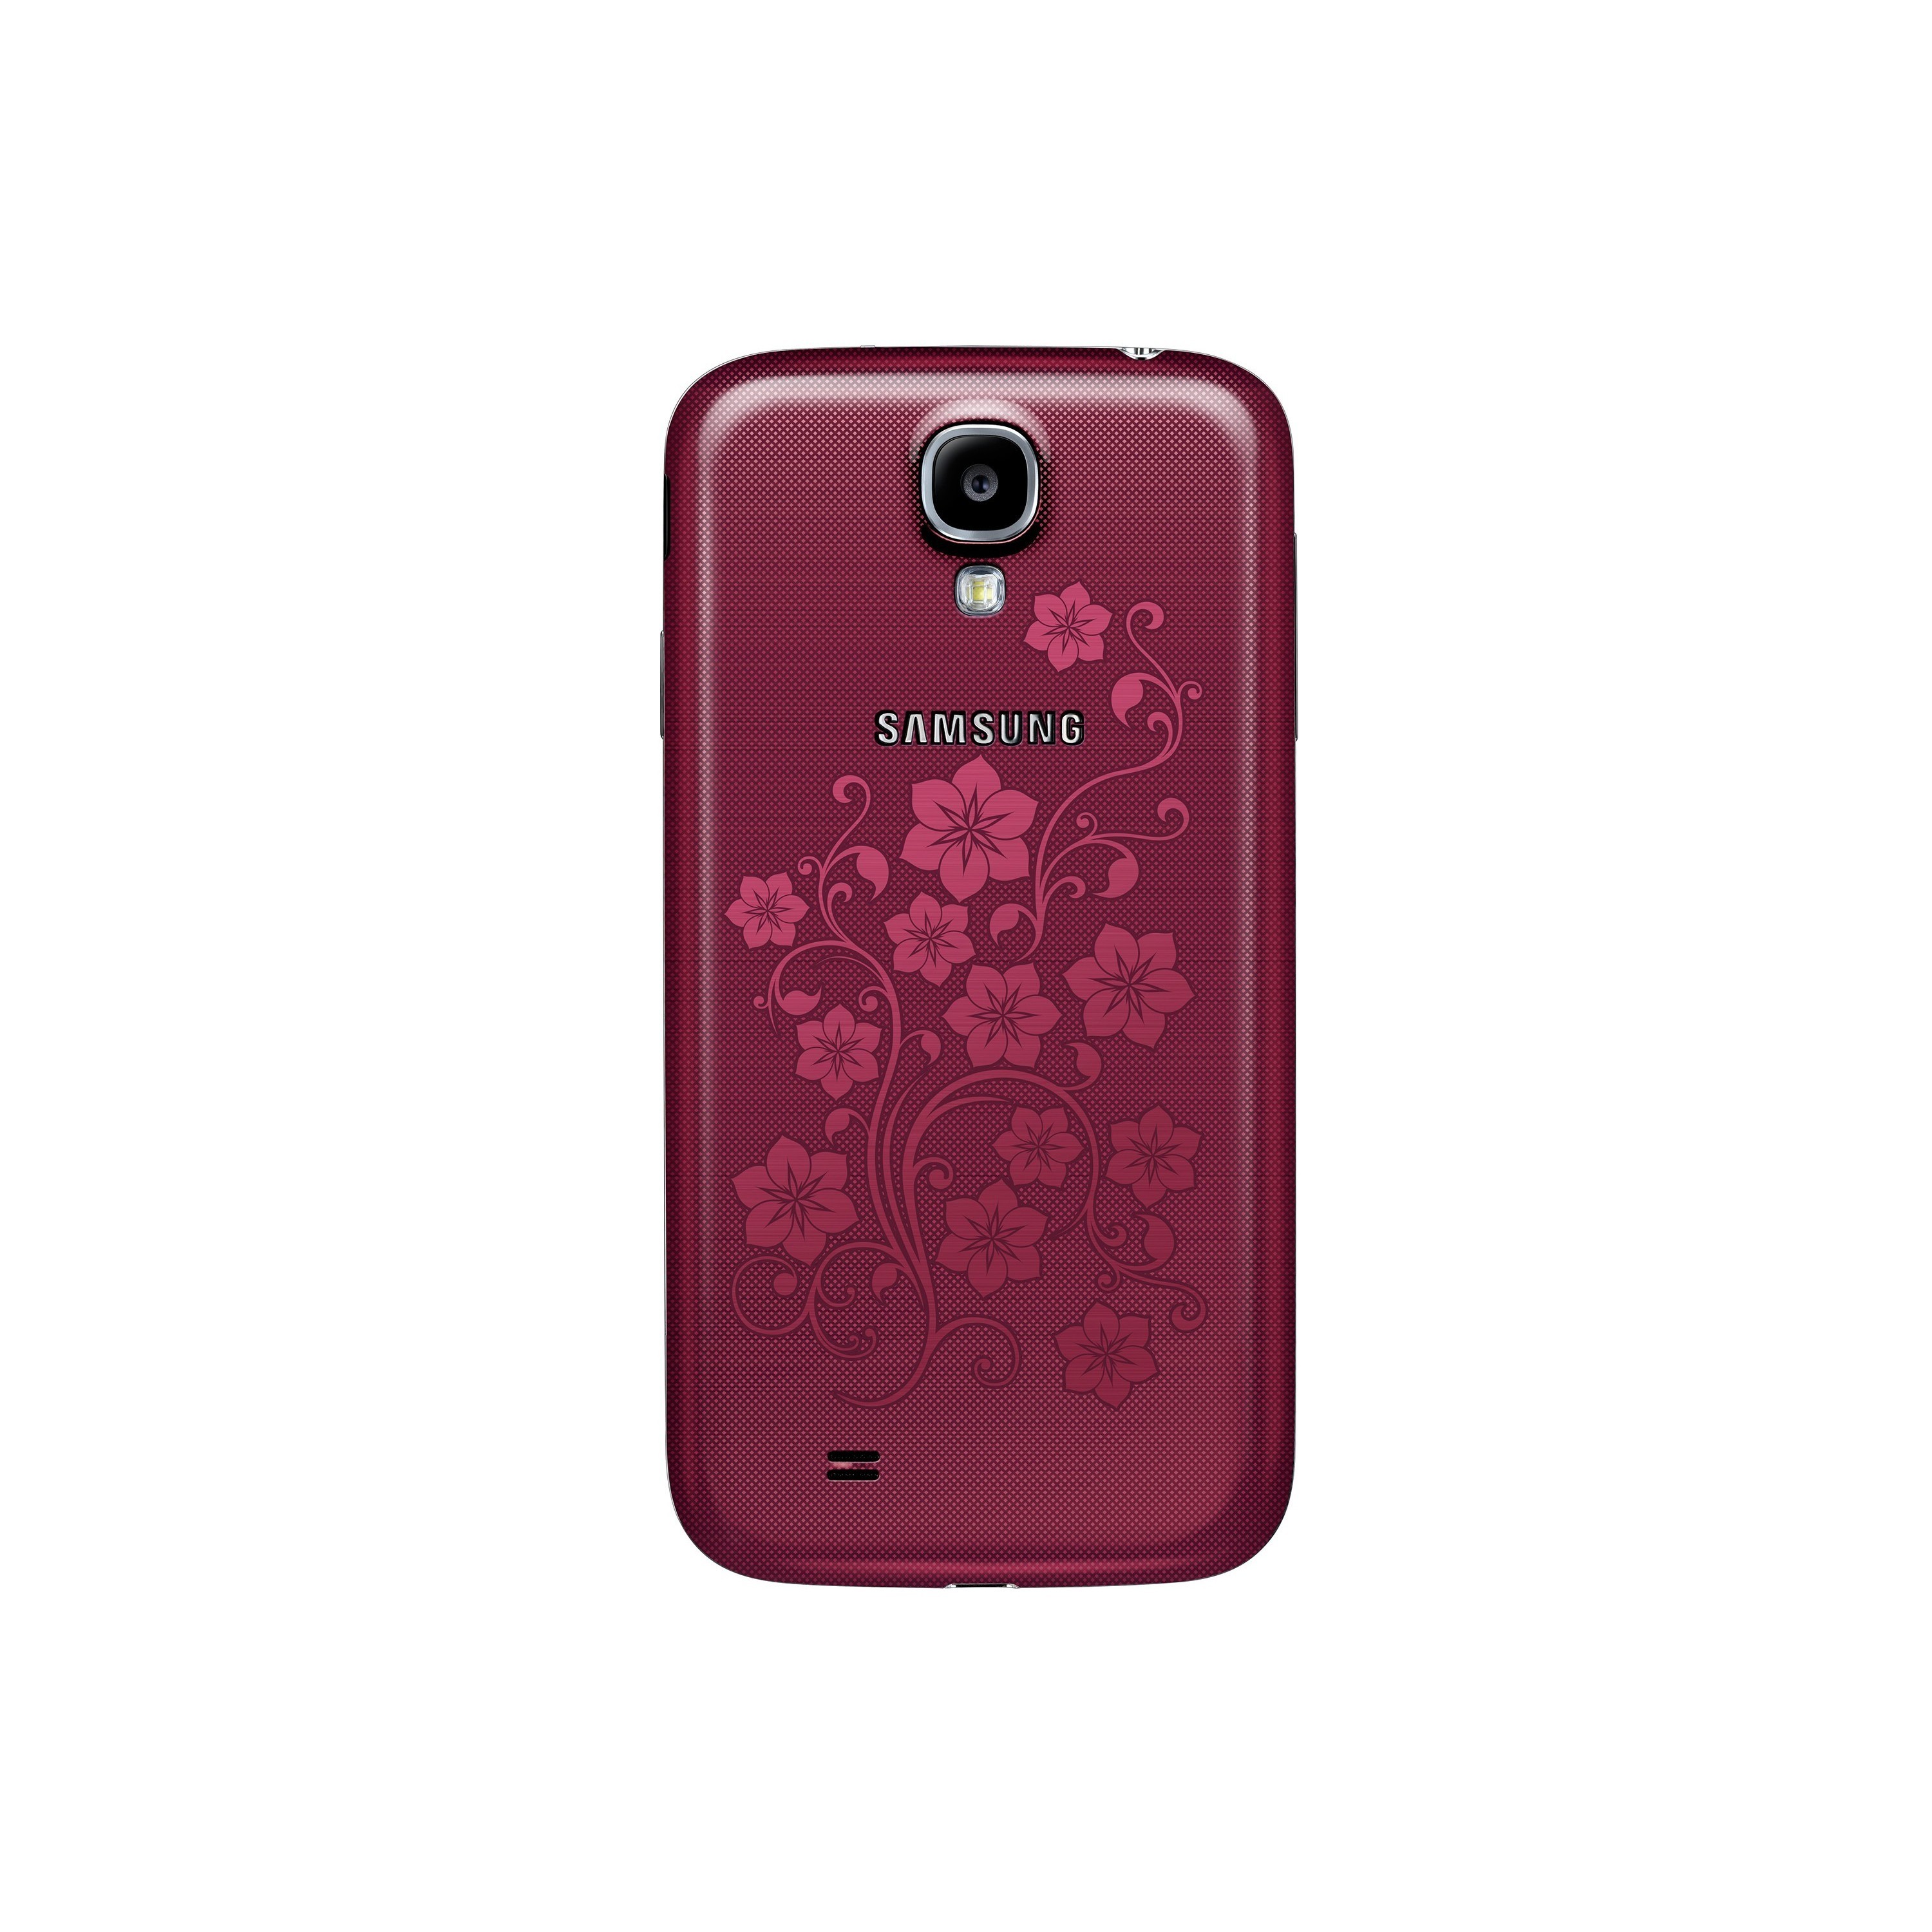 Самсунг la fleur. Samsung Galaxy s4 la fleur. Samsung s4 Mini la fleur. Samsung Galaxy la fleur s4 Duos. Samsung la fleur gt.